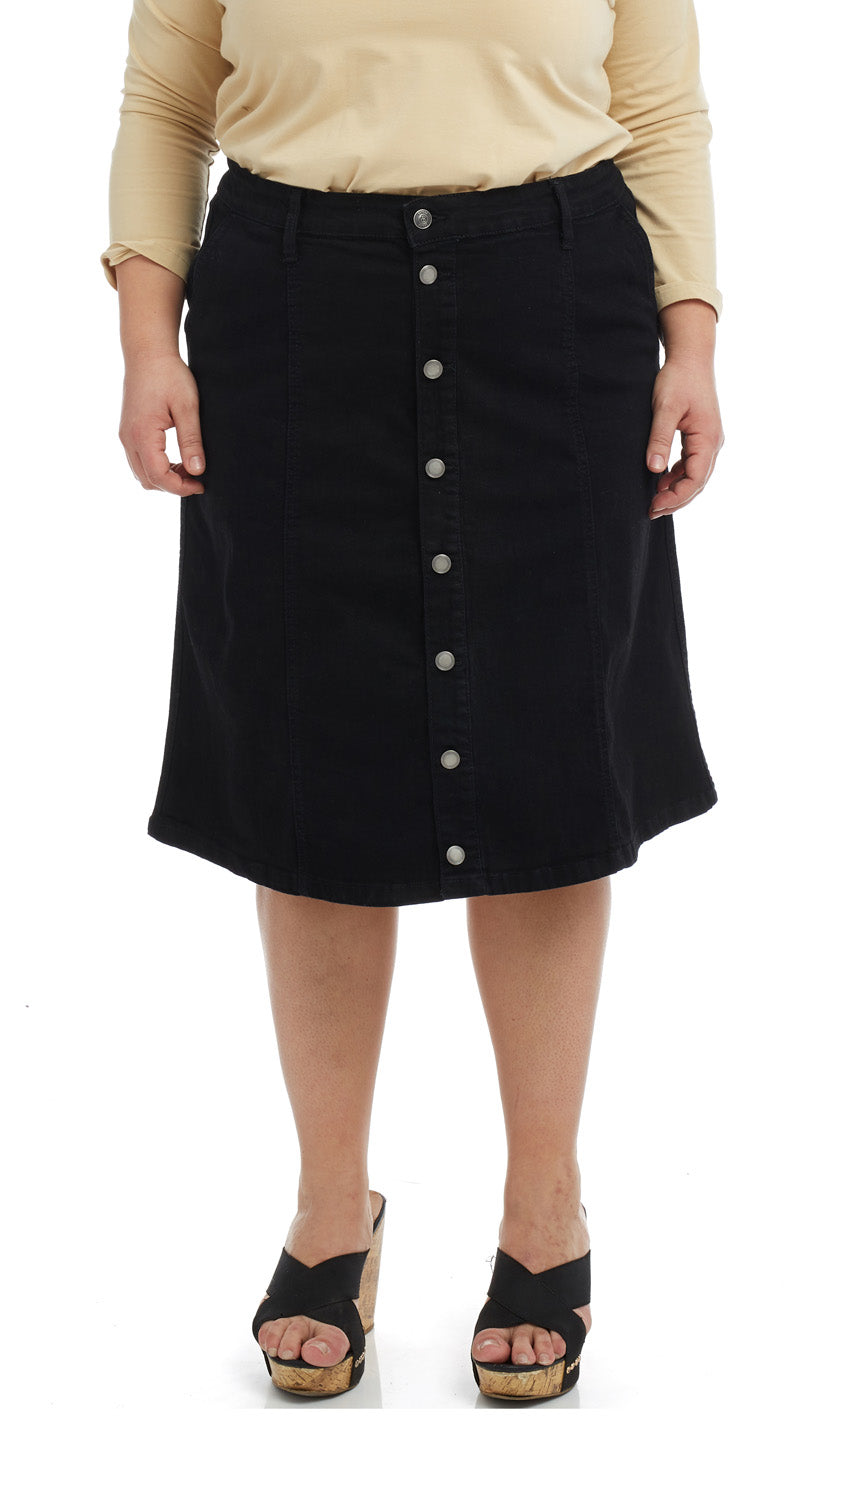 black modest tznius jean skirt for women and teens